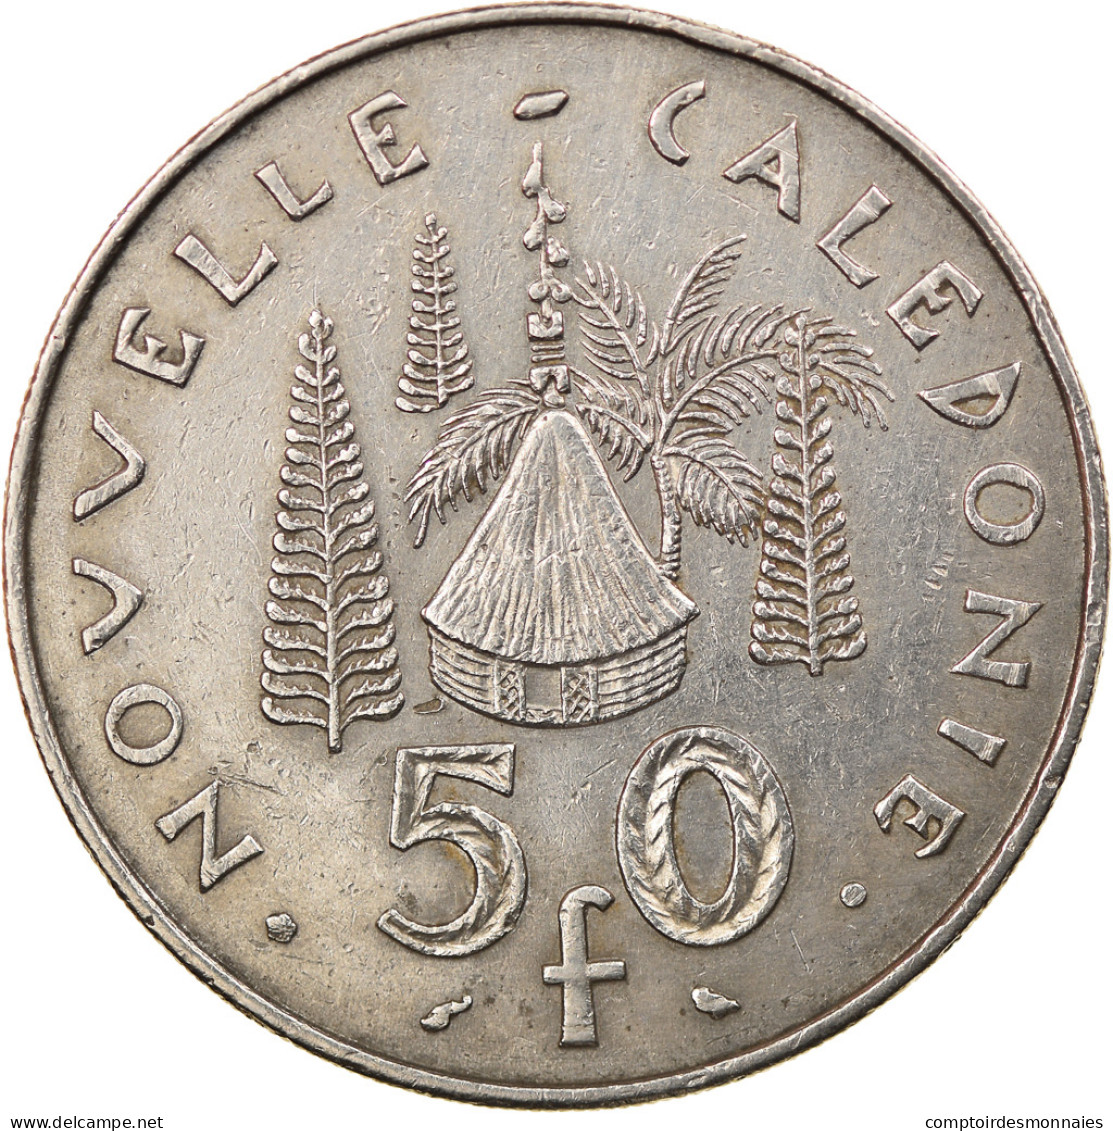 Monnaie, Nouvelle-Calédonie, 50 Francs, 1972, Paris, TTB, Nickel, KM:13 - Nouvelle-Calédonie